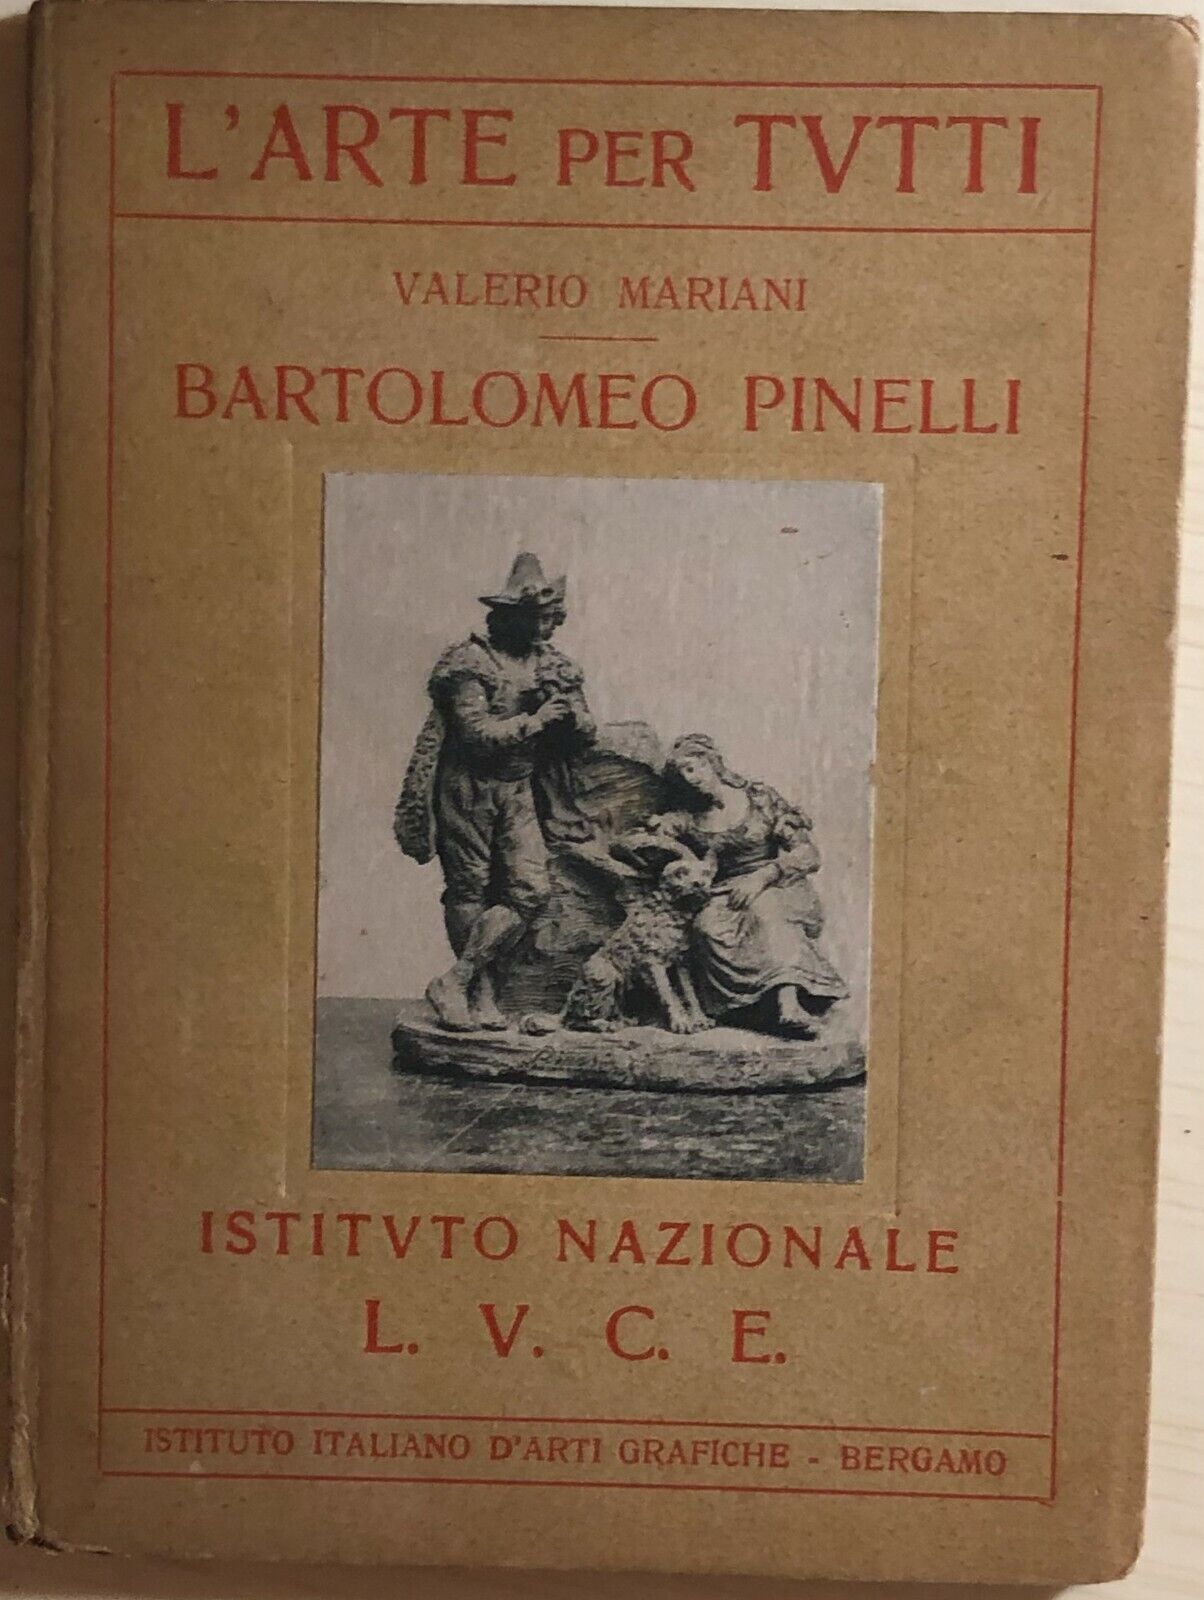 Bartolomeo Pinelli di Valerio Mariani,  1931,  Istituto Nazionale Luce